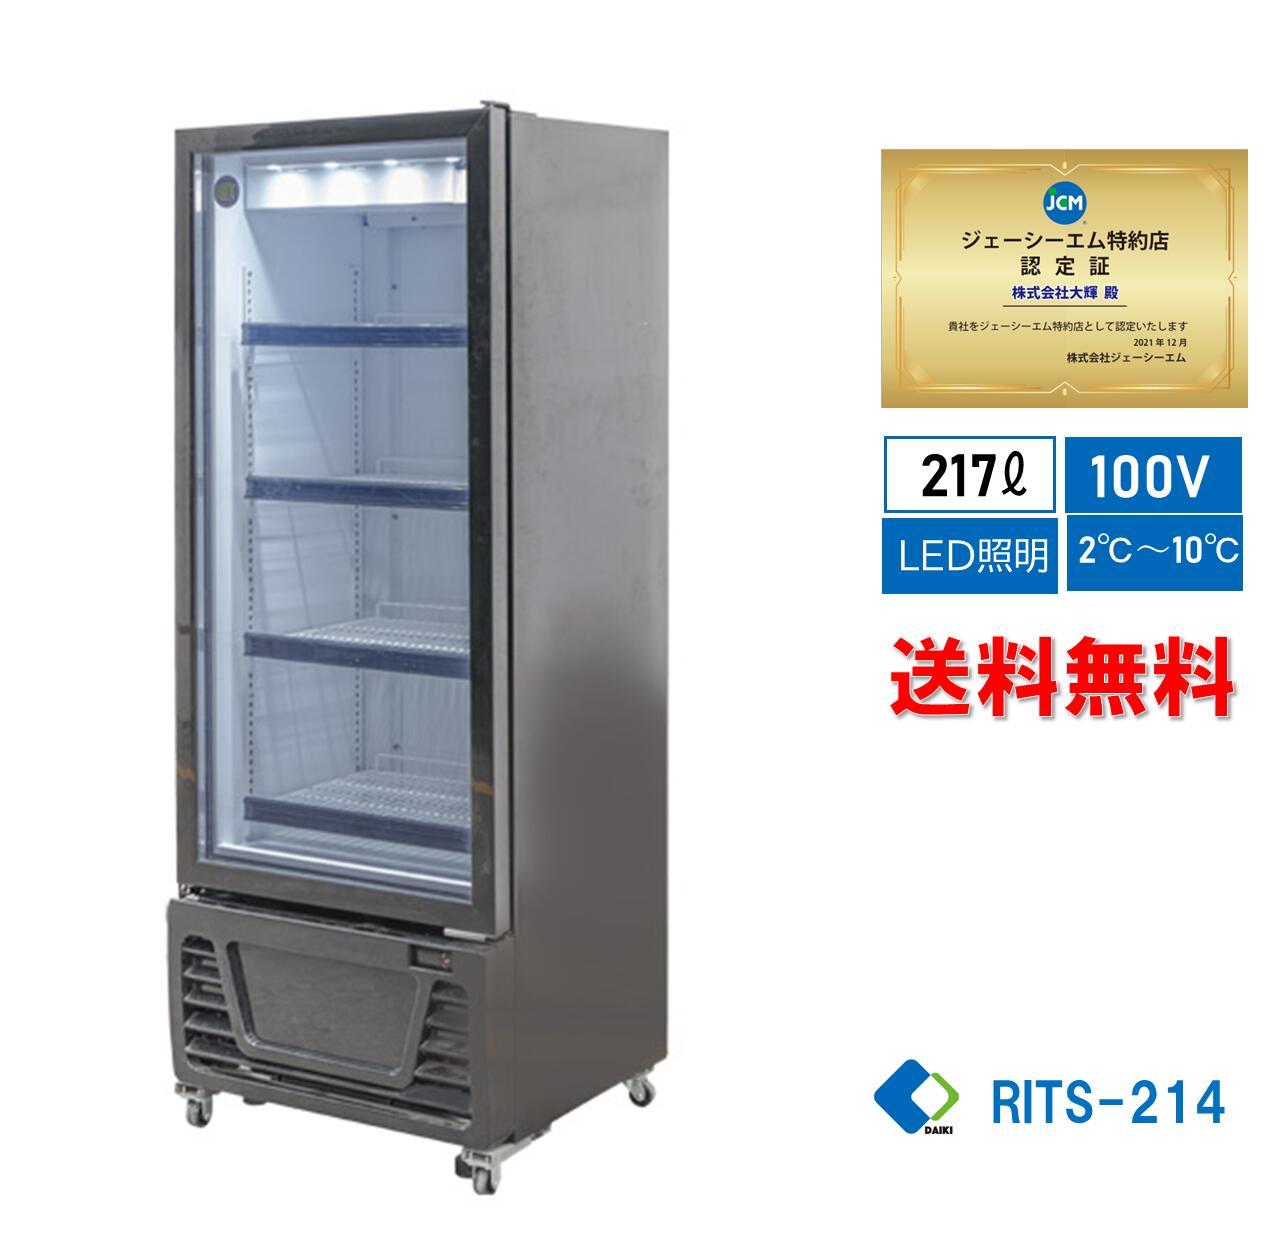 【楽天市場】 助成金対象商品 業務用 JCM タテ型冷蔵ショーケース 